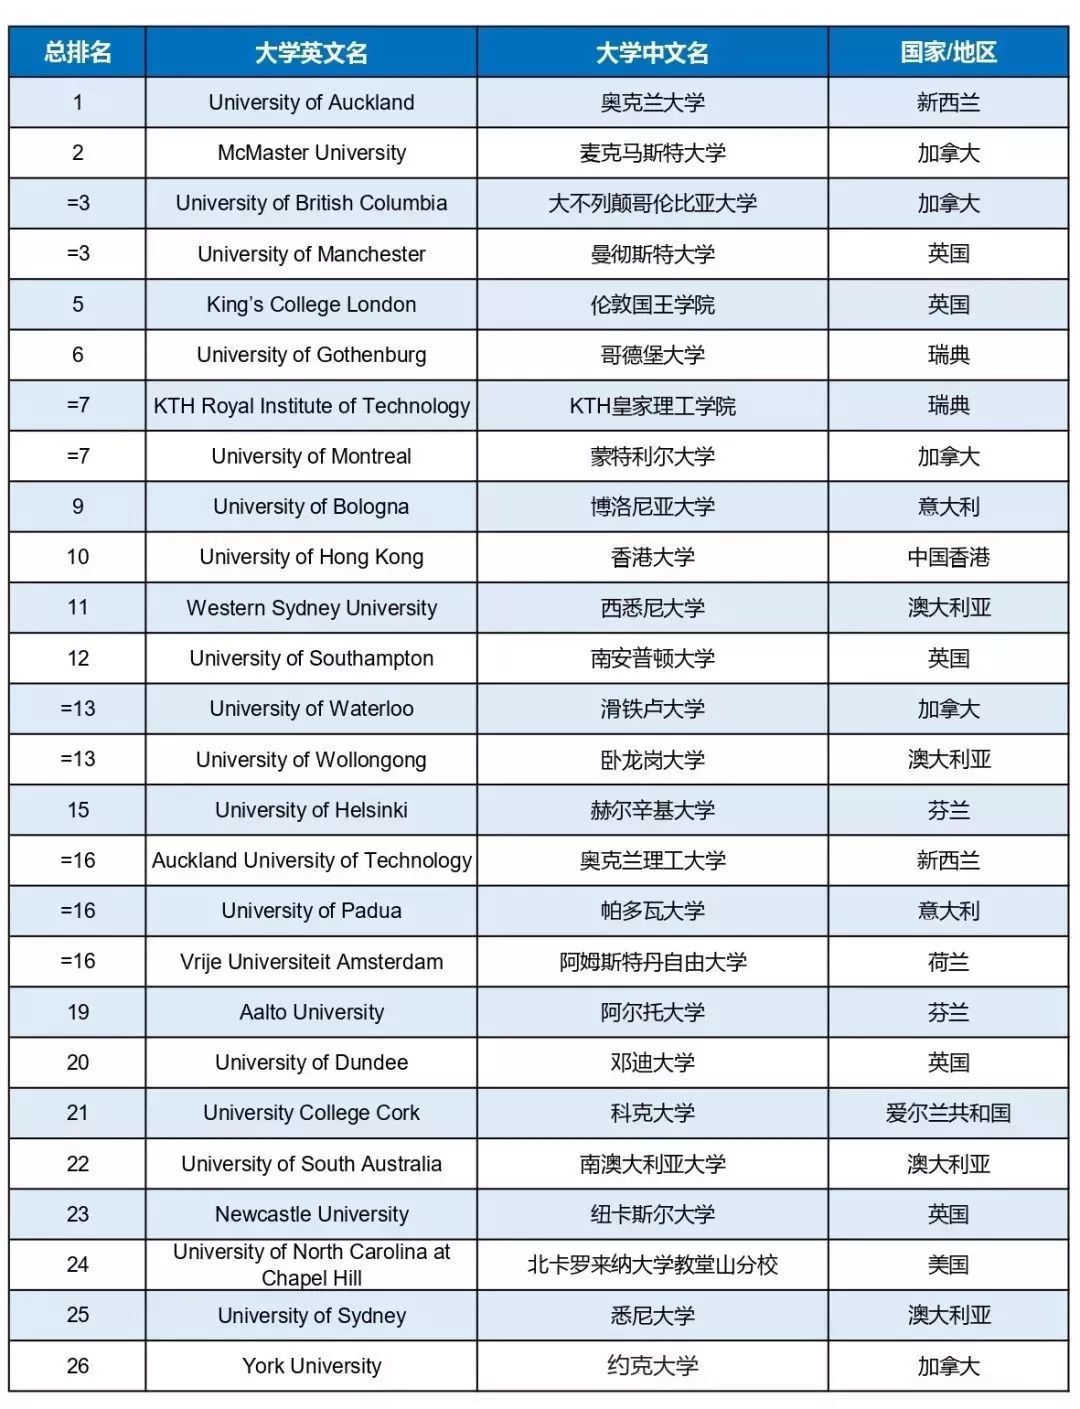 2019 世界大学排行榜_2019年世界十大权威大学排名报告发布,中国891所高校